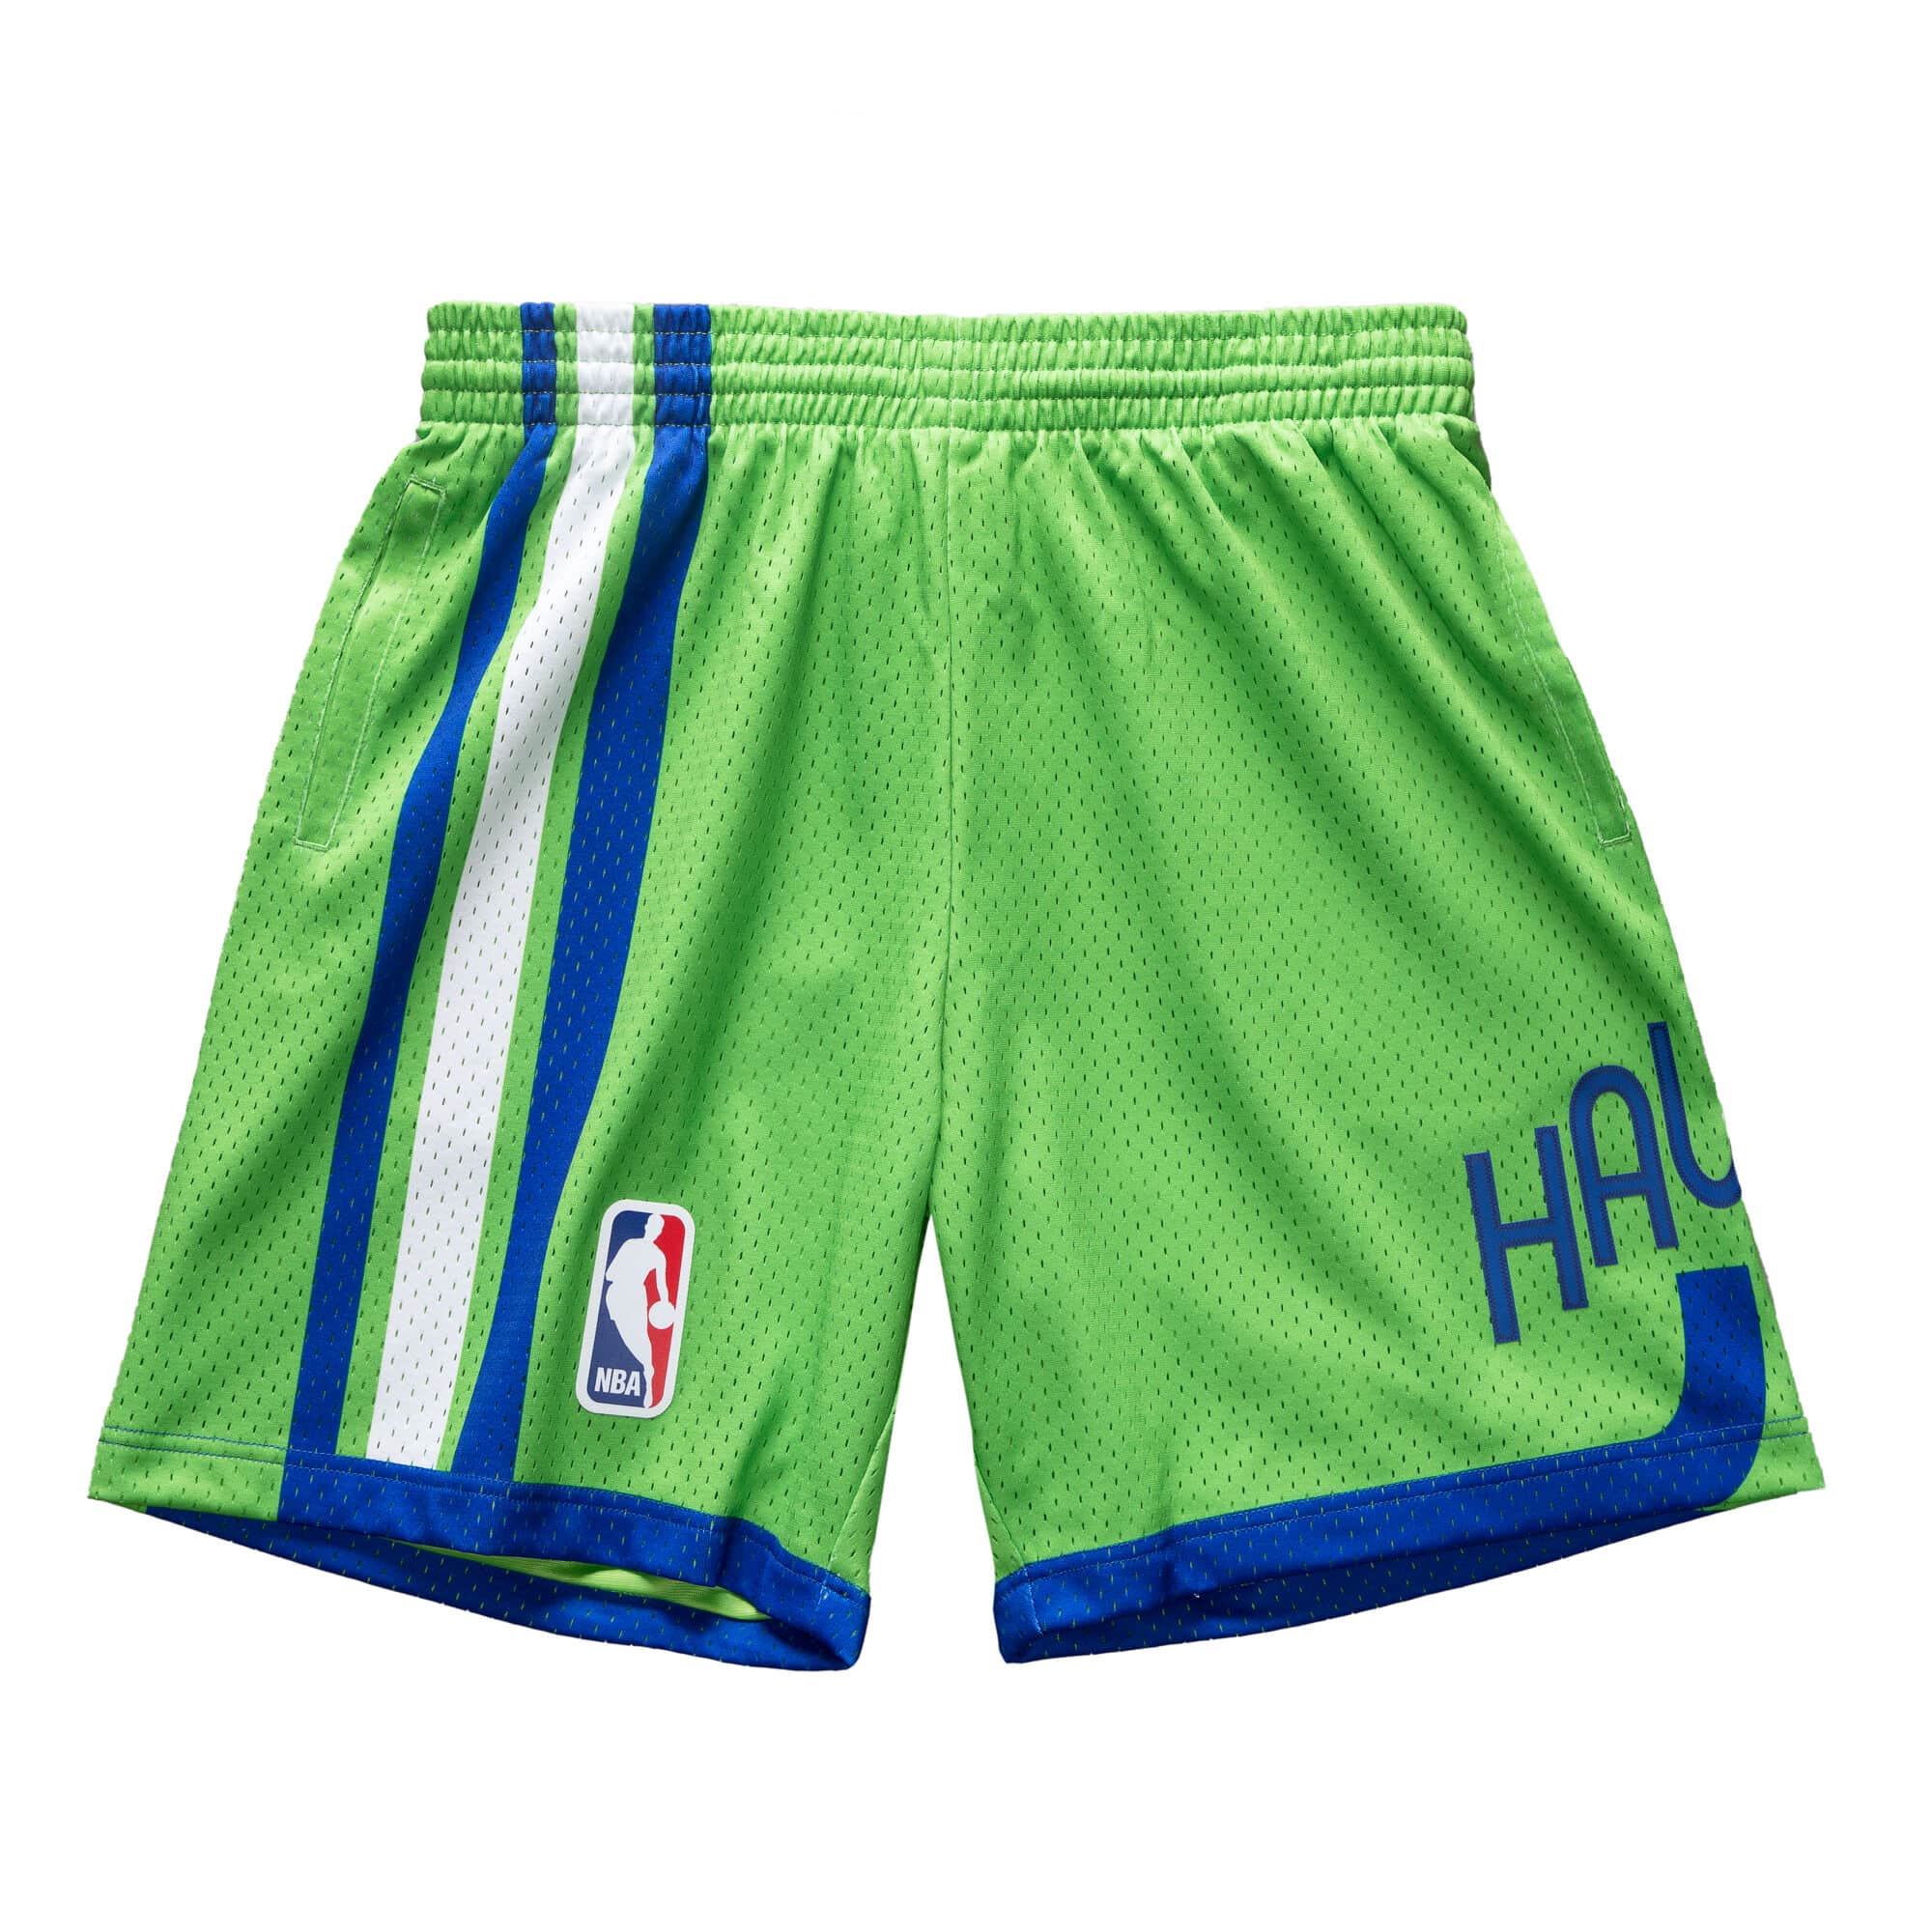 Green Atlanta Hawks NBA Jerseys for sale